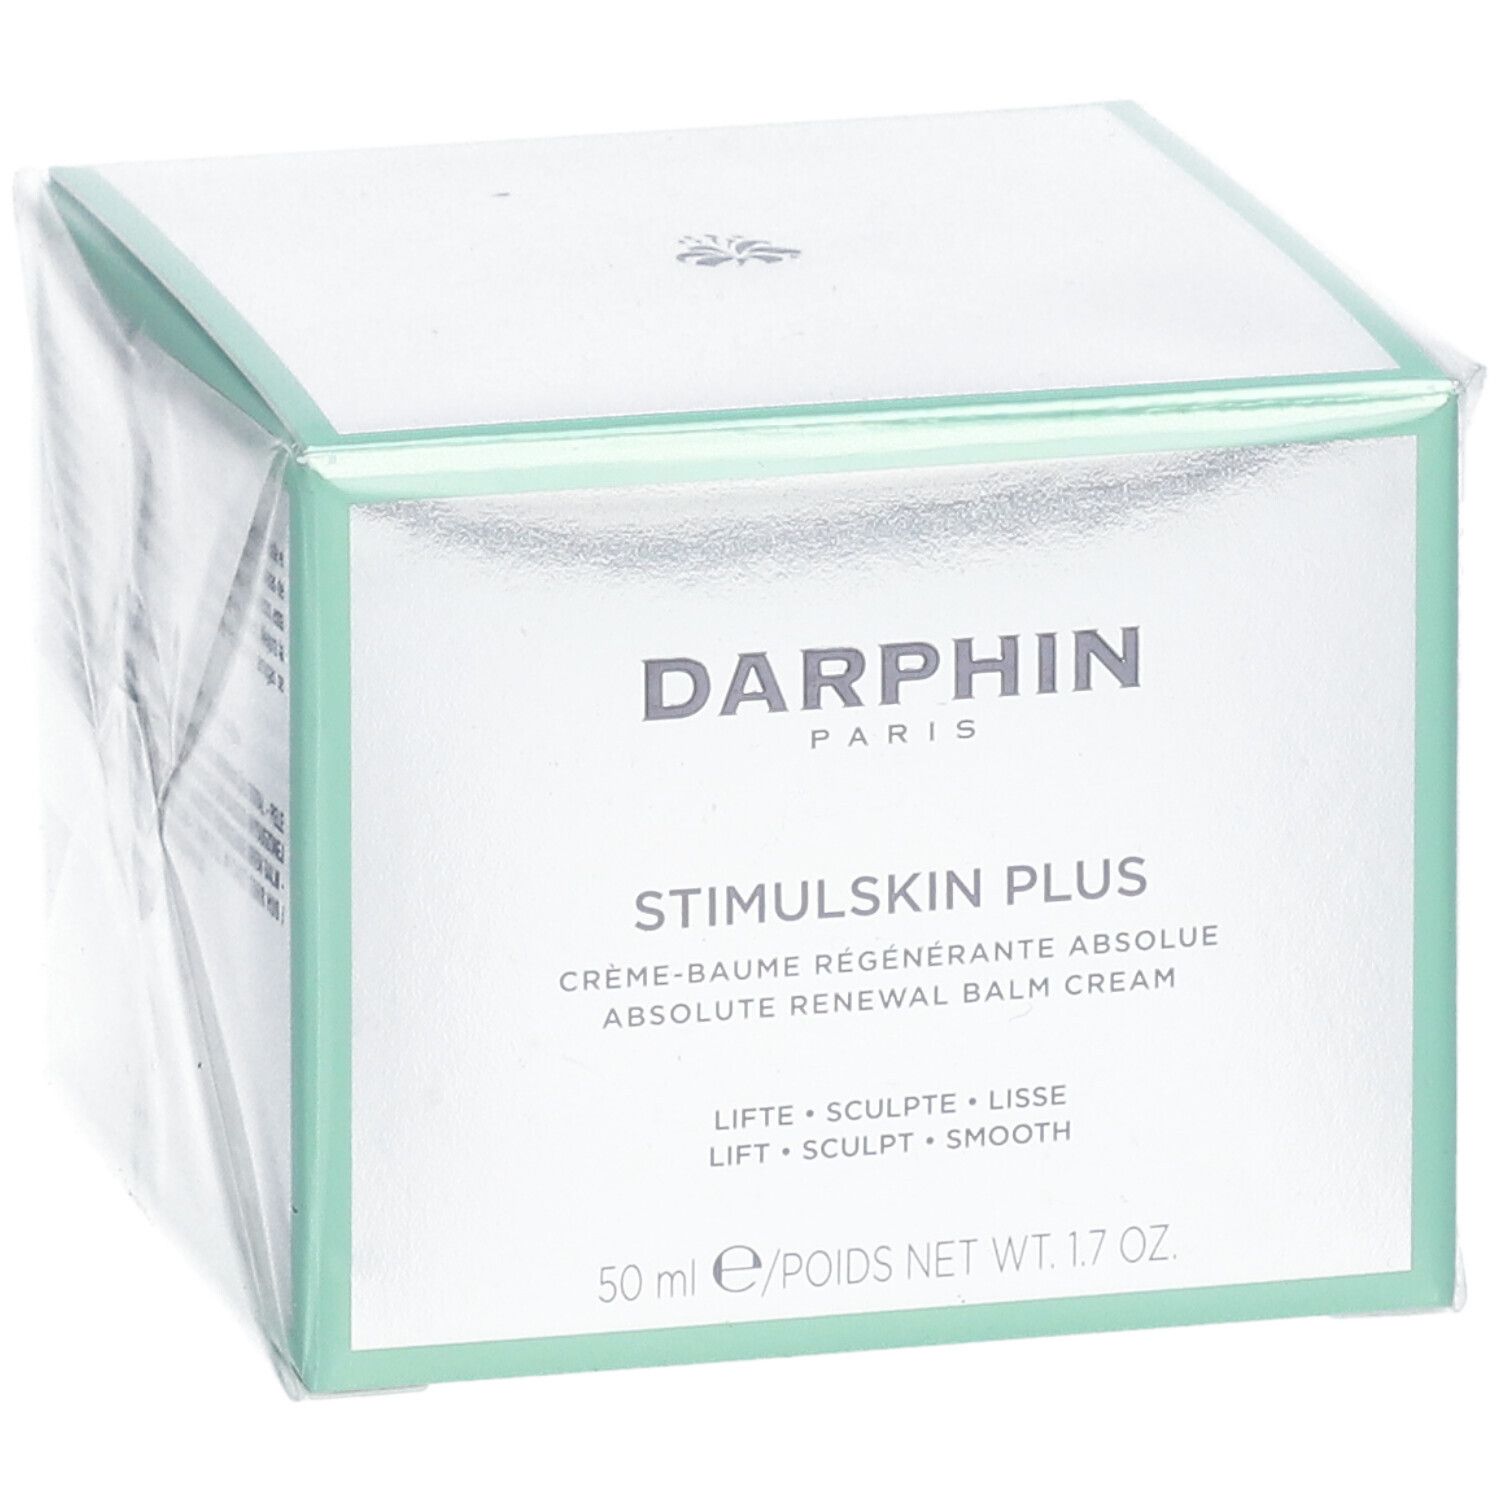 DARPHIN STIMULSKIN PLUS Absolut Renewal Balm Cream